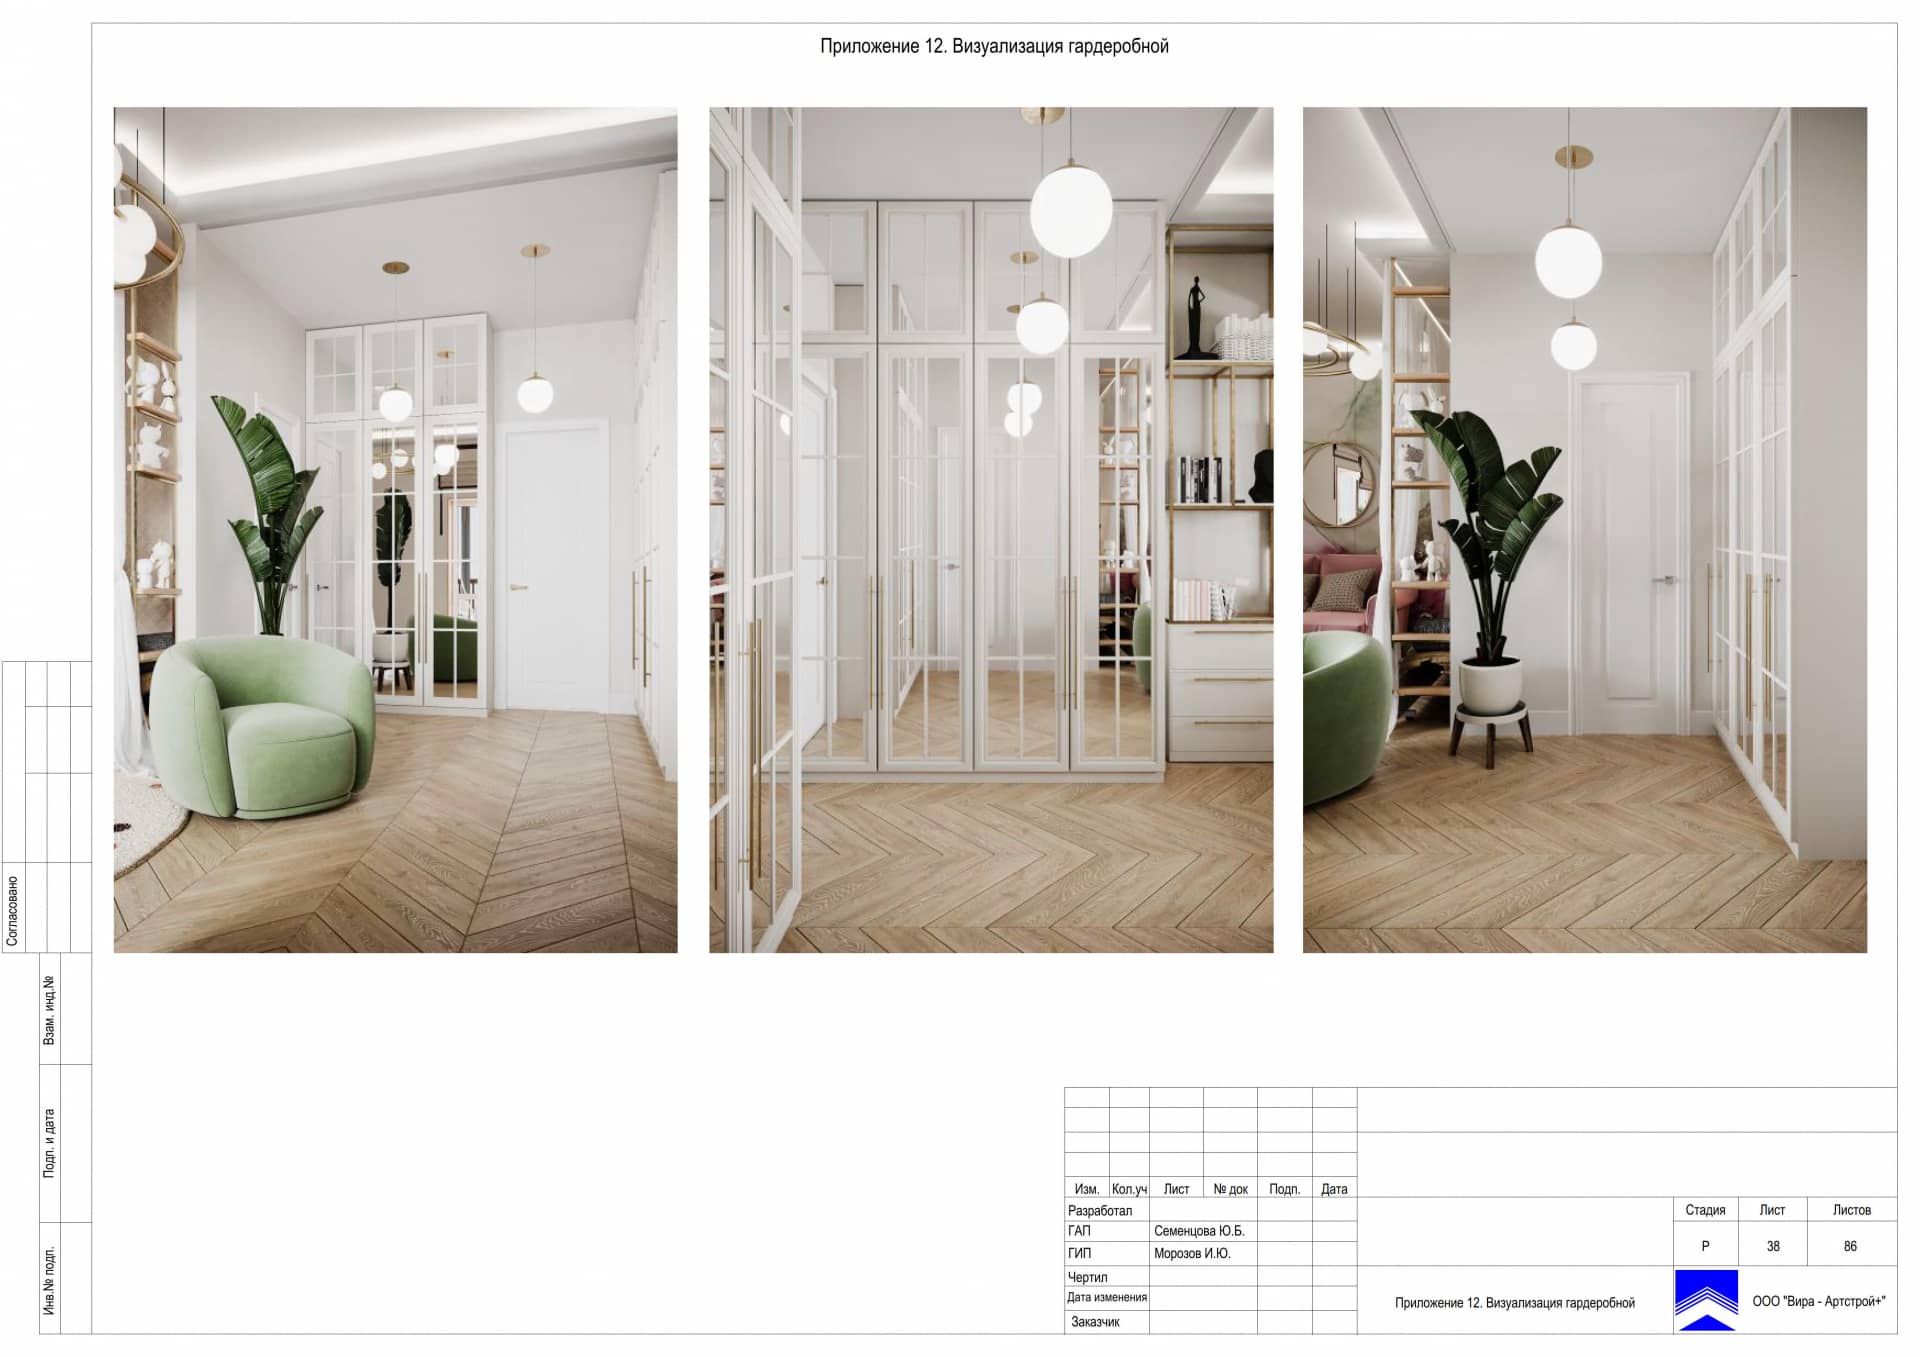 Приложение 12. Визуализация гардеробной, дом 471 м² в КП «Сорочаны»